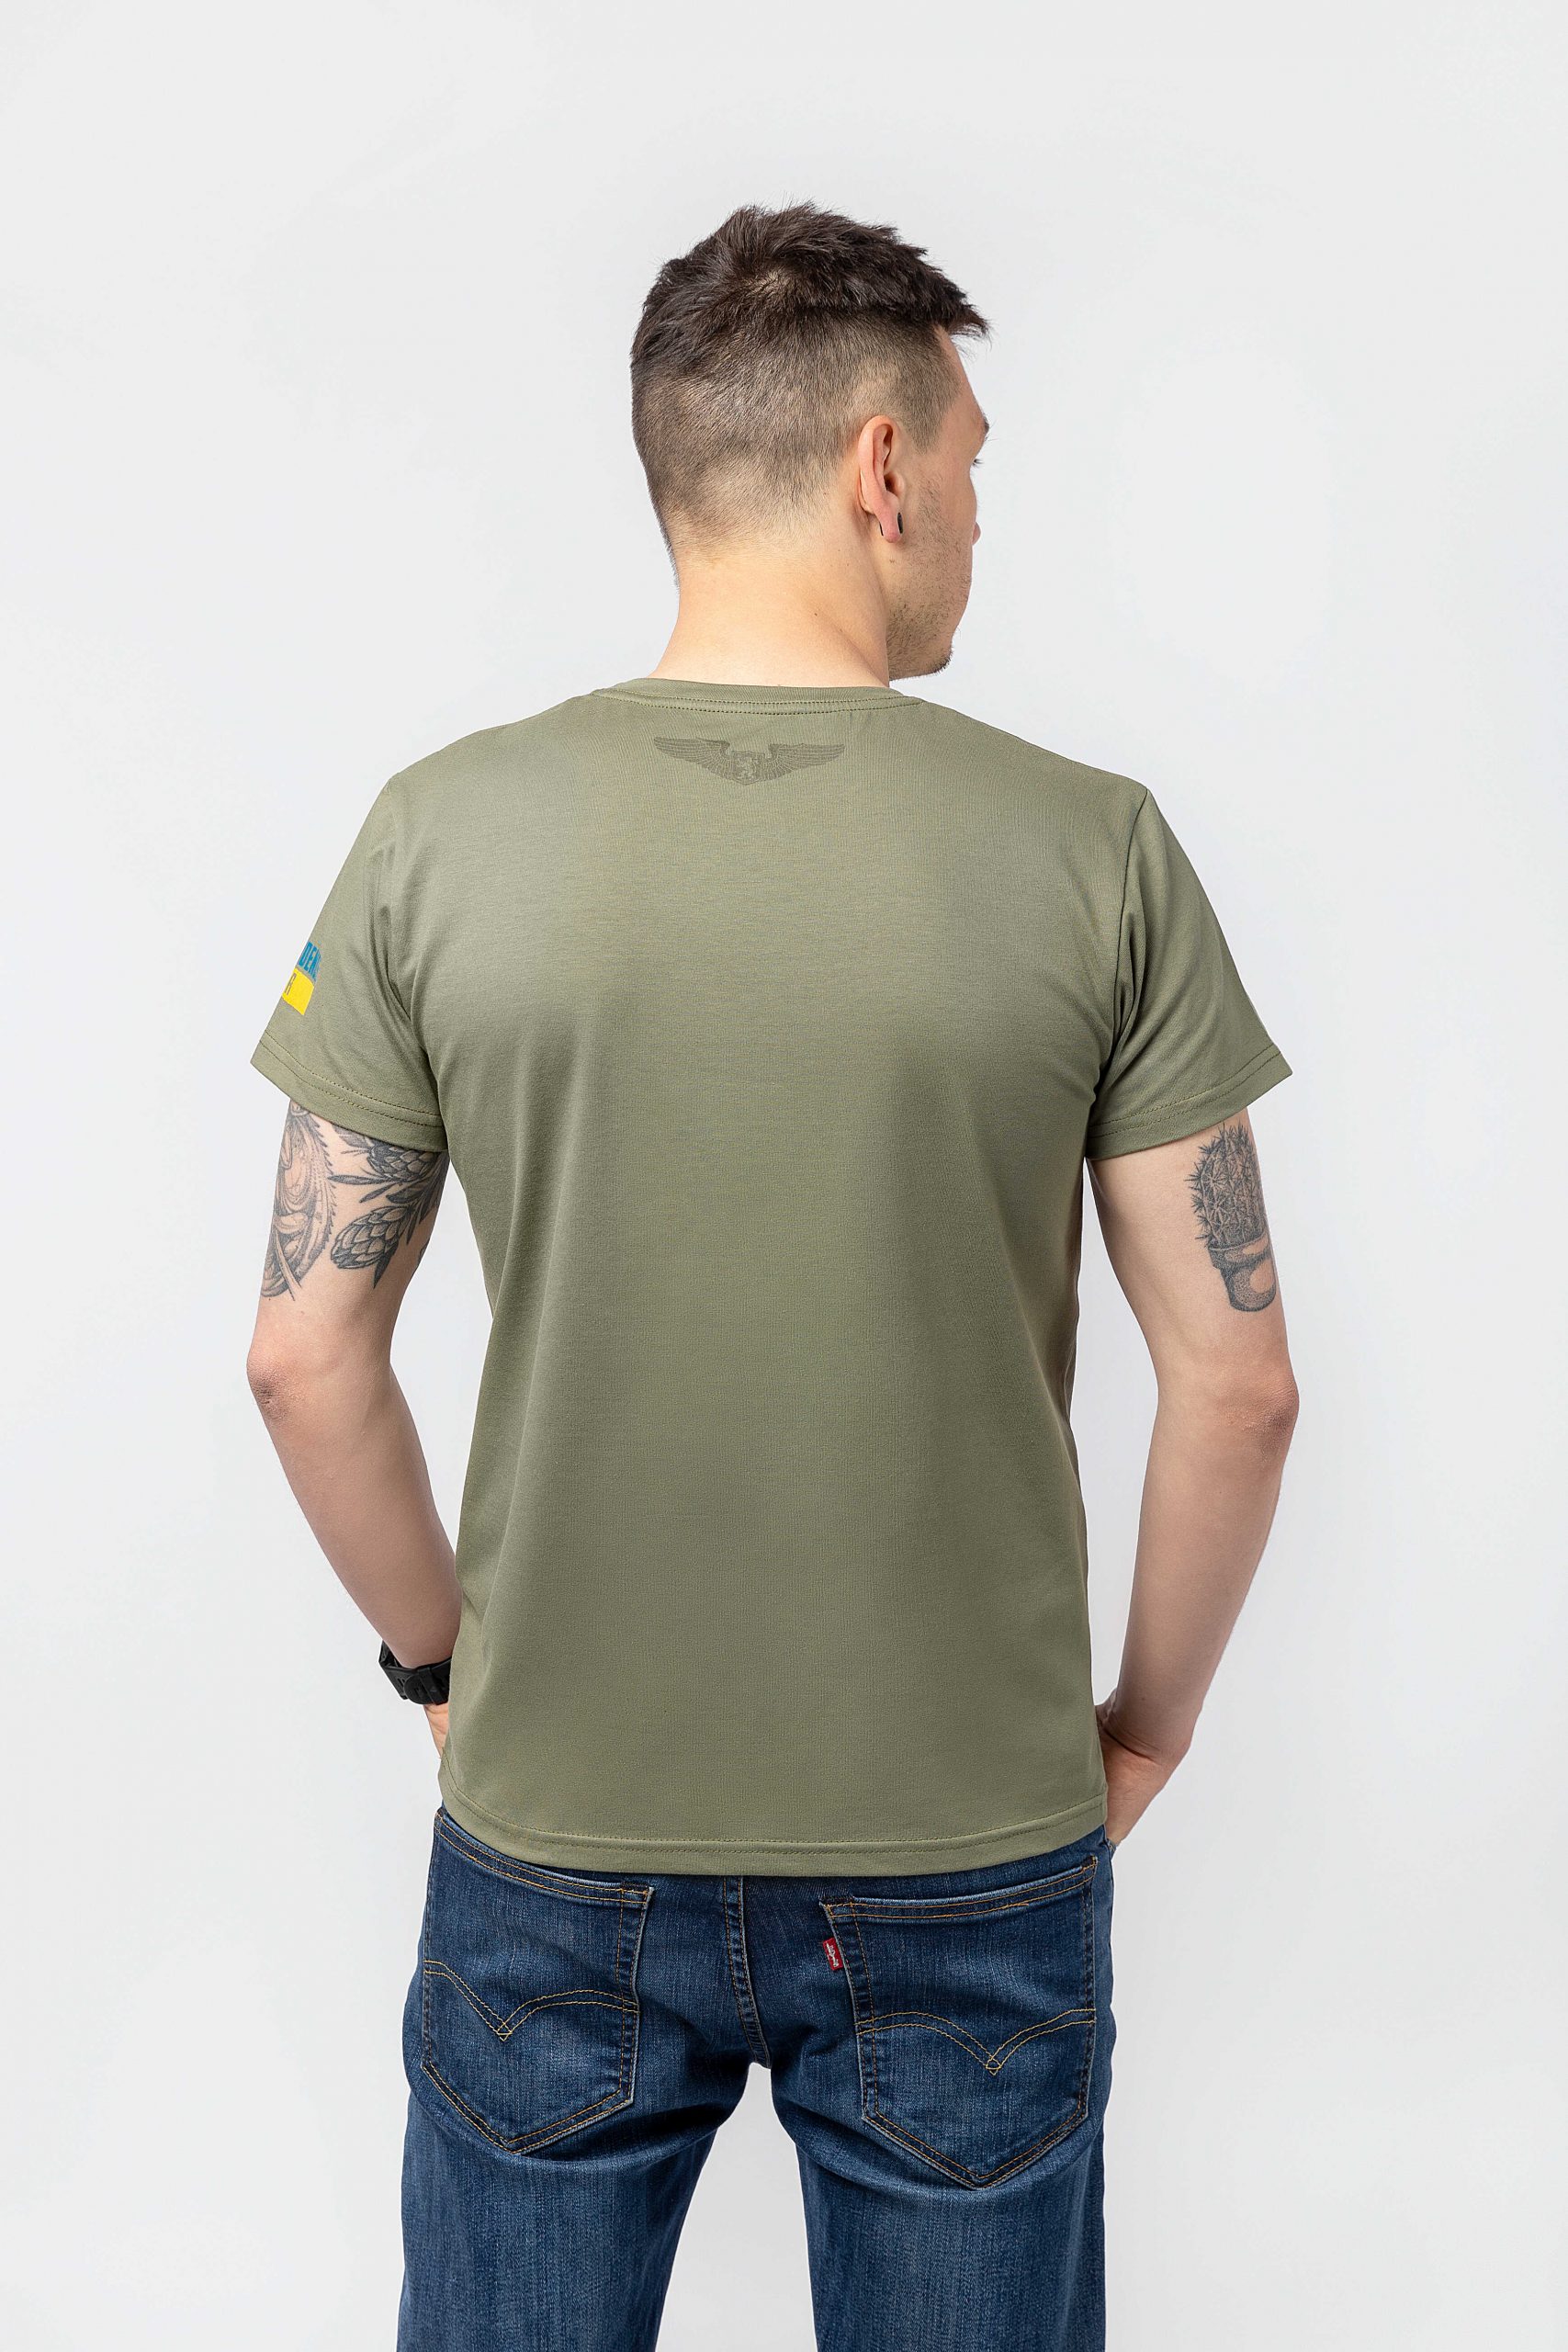 Men's T-Shirt Chornobaivka. Color khaki. 1.